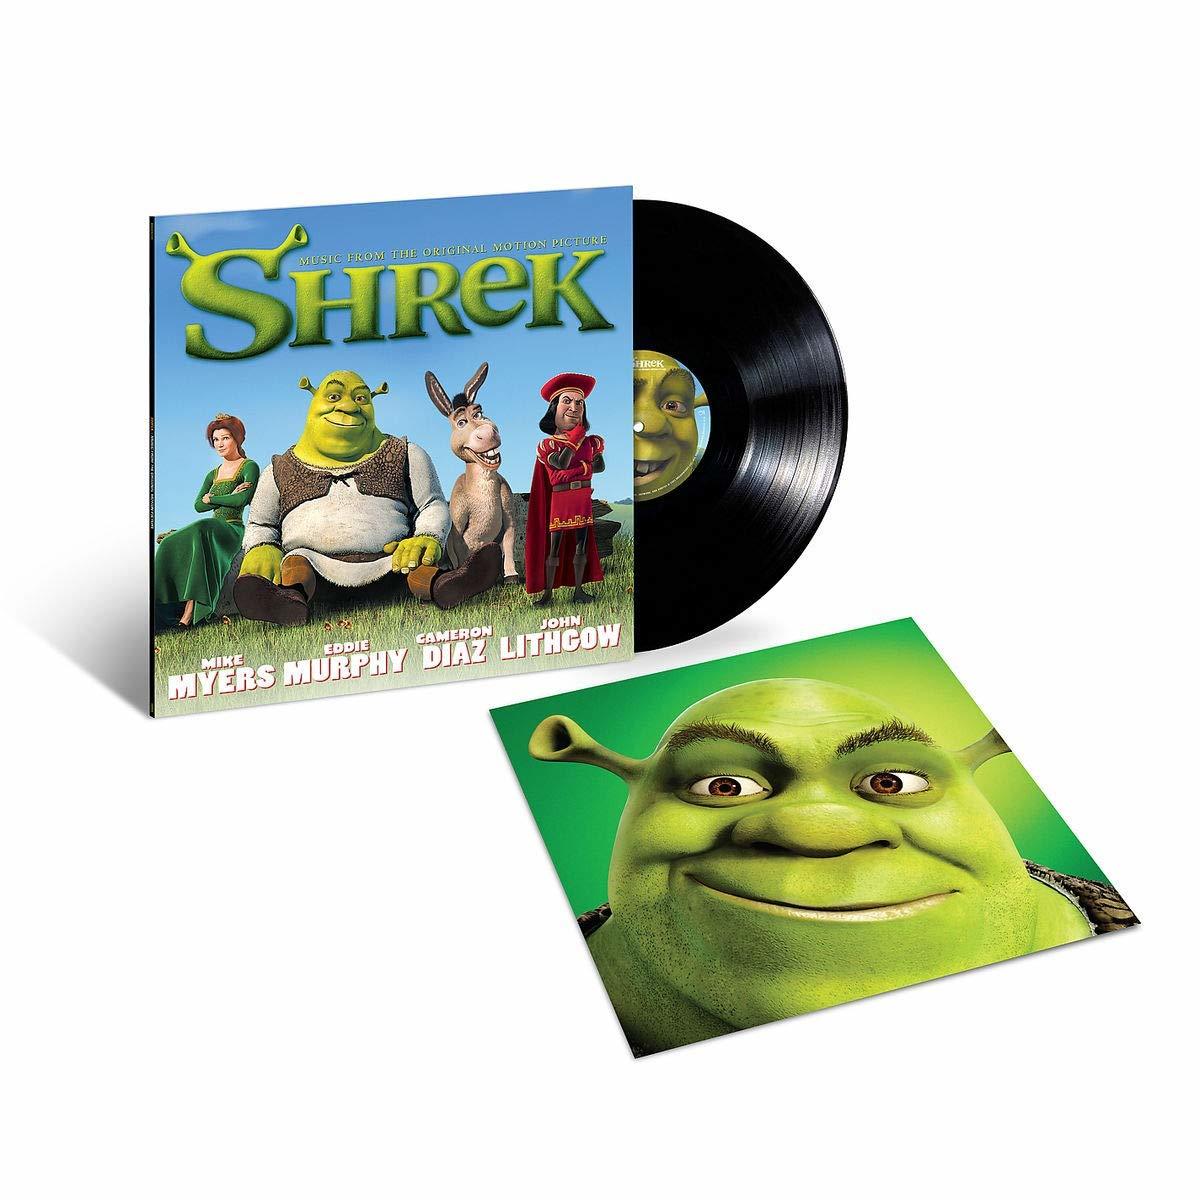 Shrek|Original Soundtrack